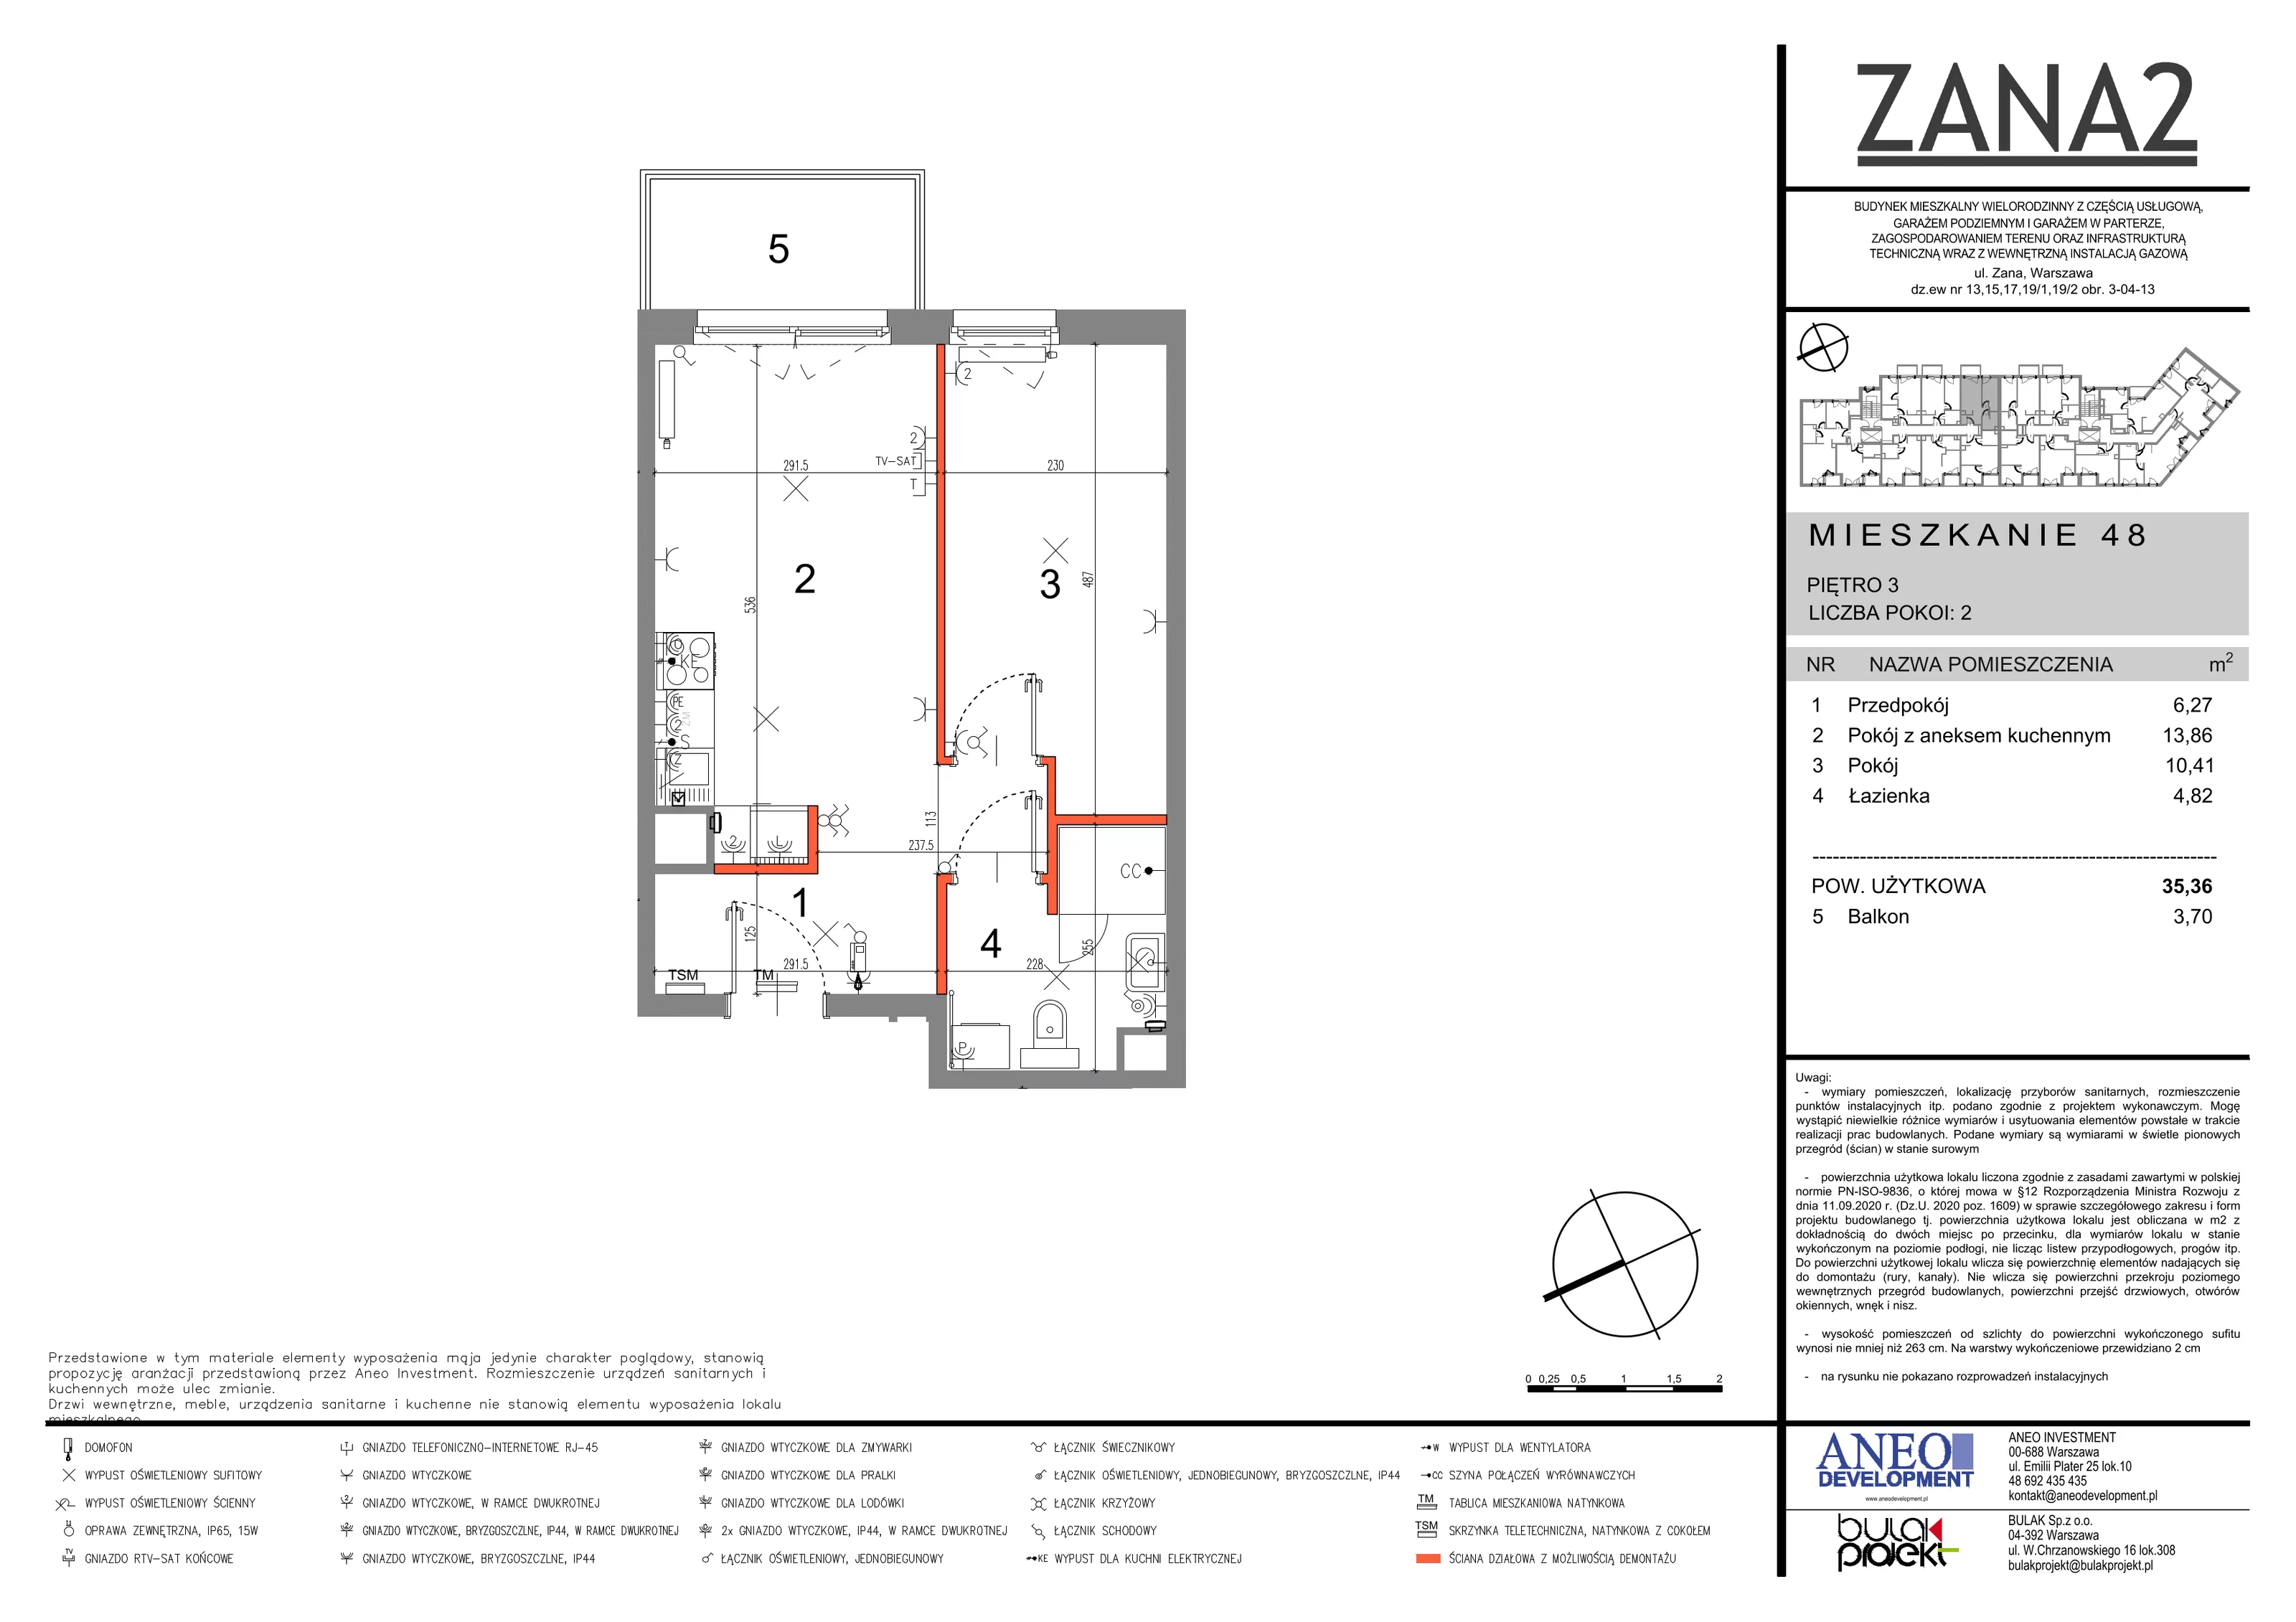 Mieszkanie 30,79 m², piętro 3, oferta nr 48, Zana 2, Warszawa, Praga Południe, Gocławek, ul. Tomasza Zana